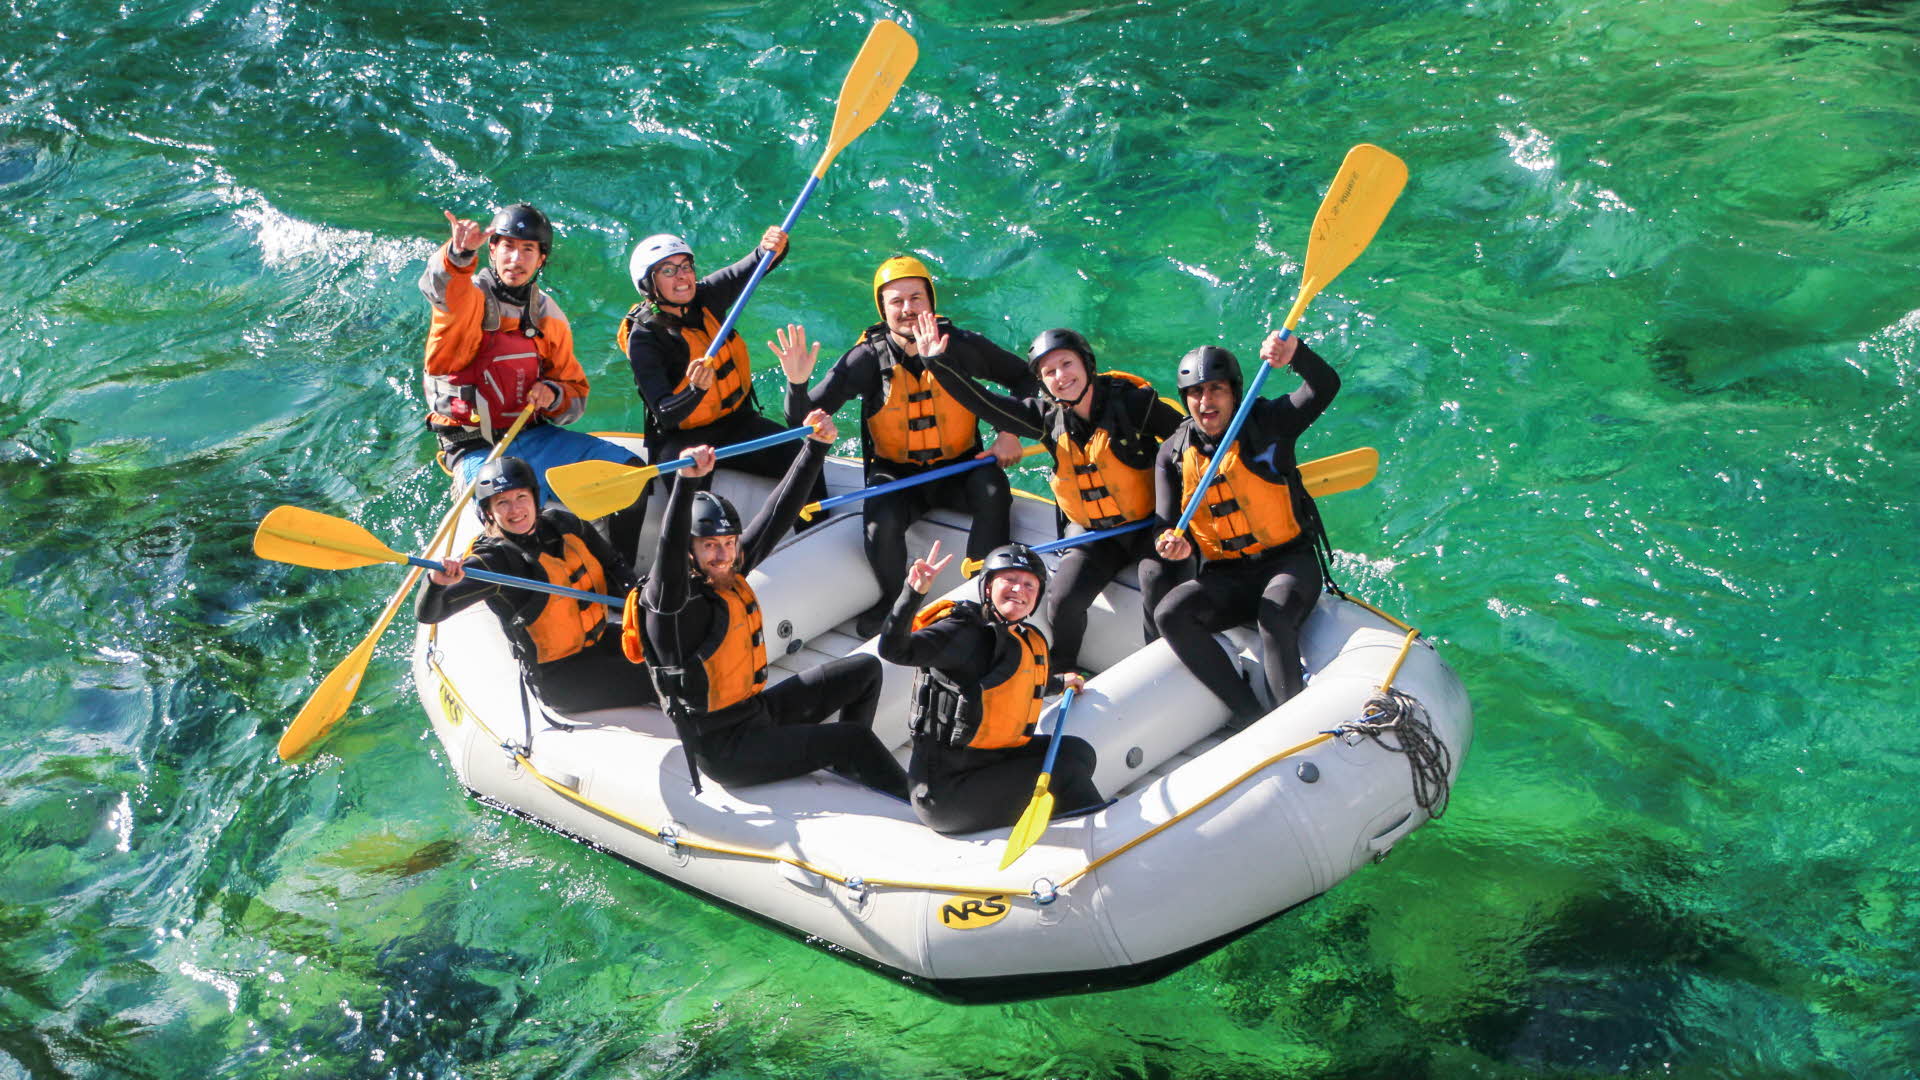 Un raft avec huit personnes agitant leurs mains sur une rivière vert clair.